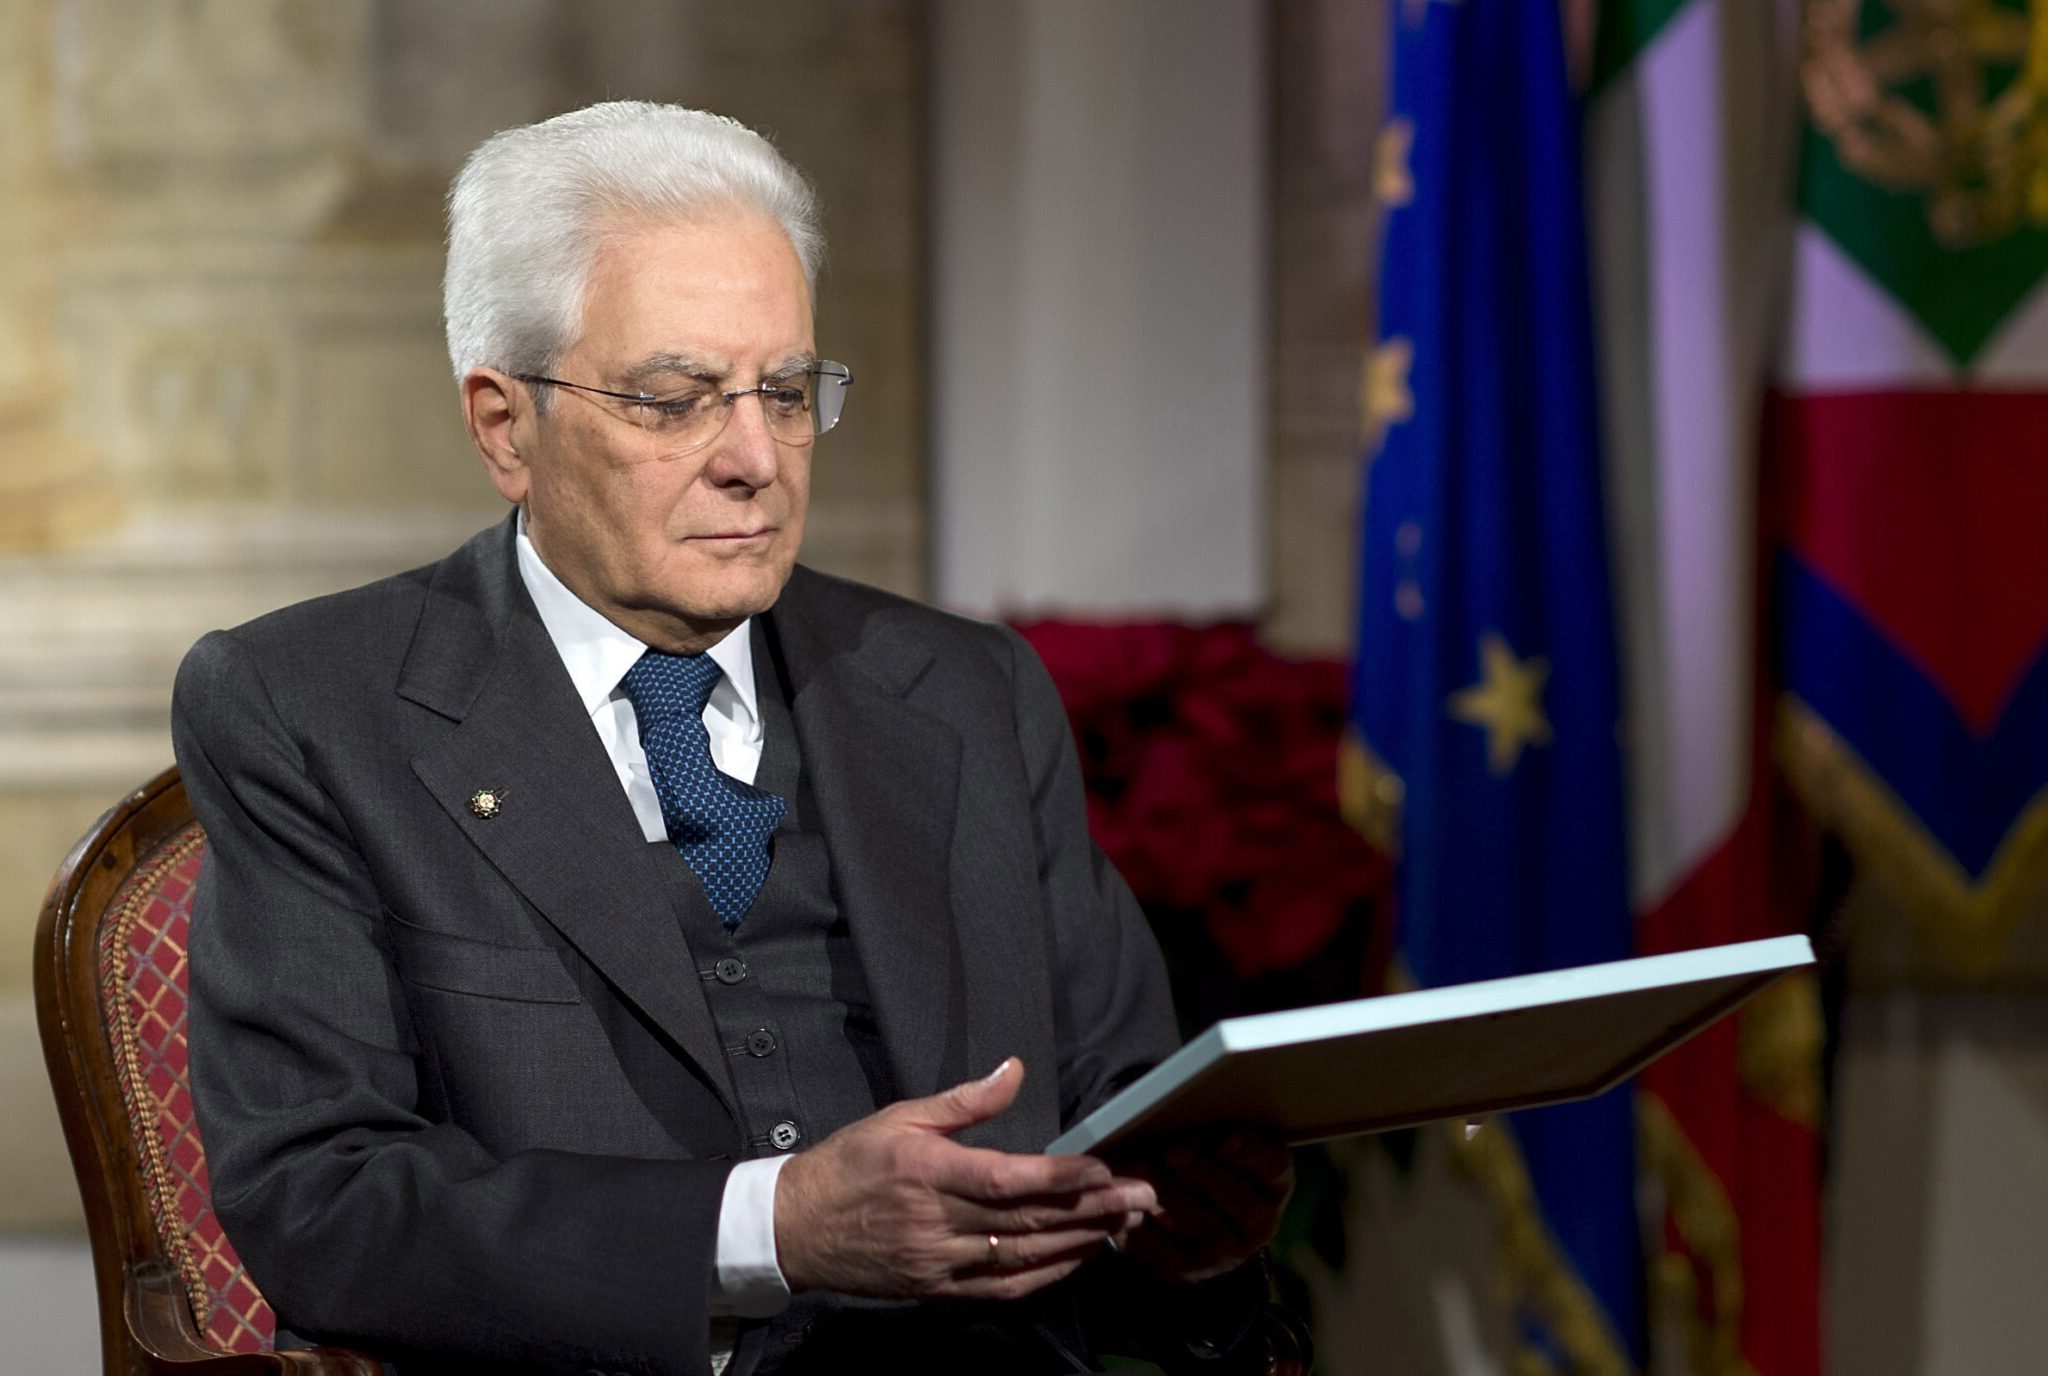 Il concetto del discorso di Mattarella: “L’Italia ce la farà”